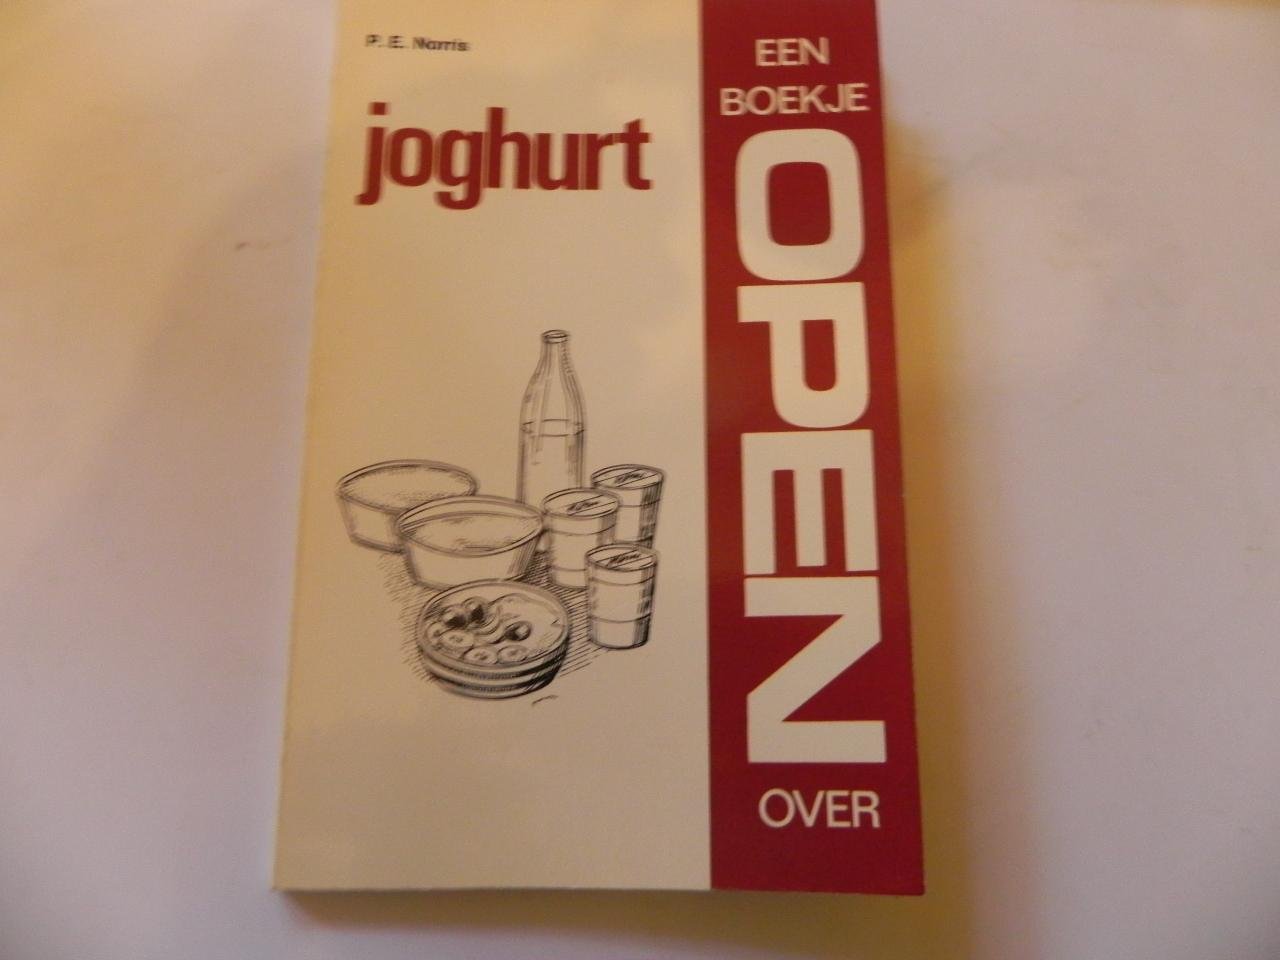 Norris - Boekje open over joghurt / druk 1